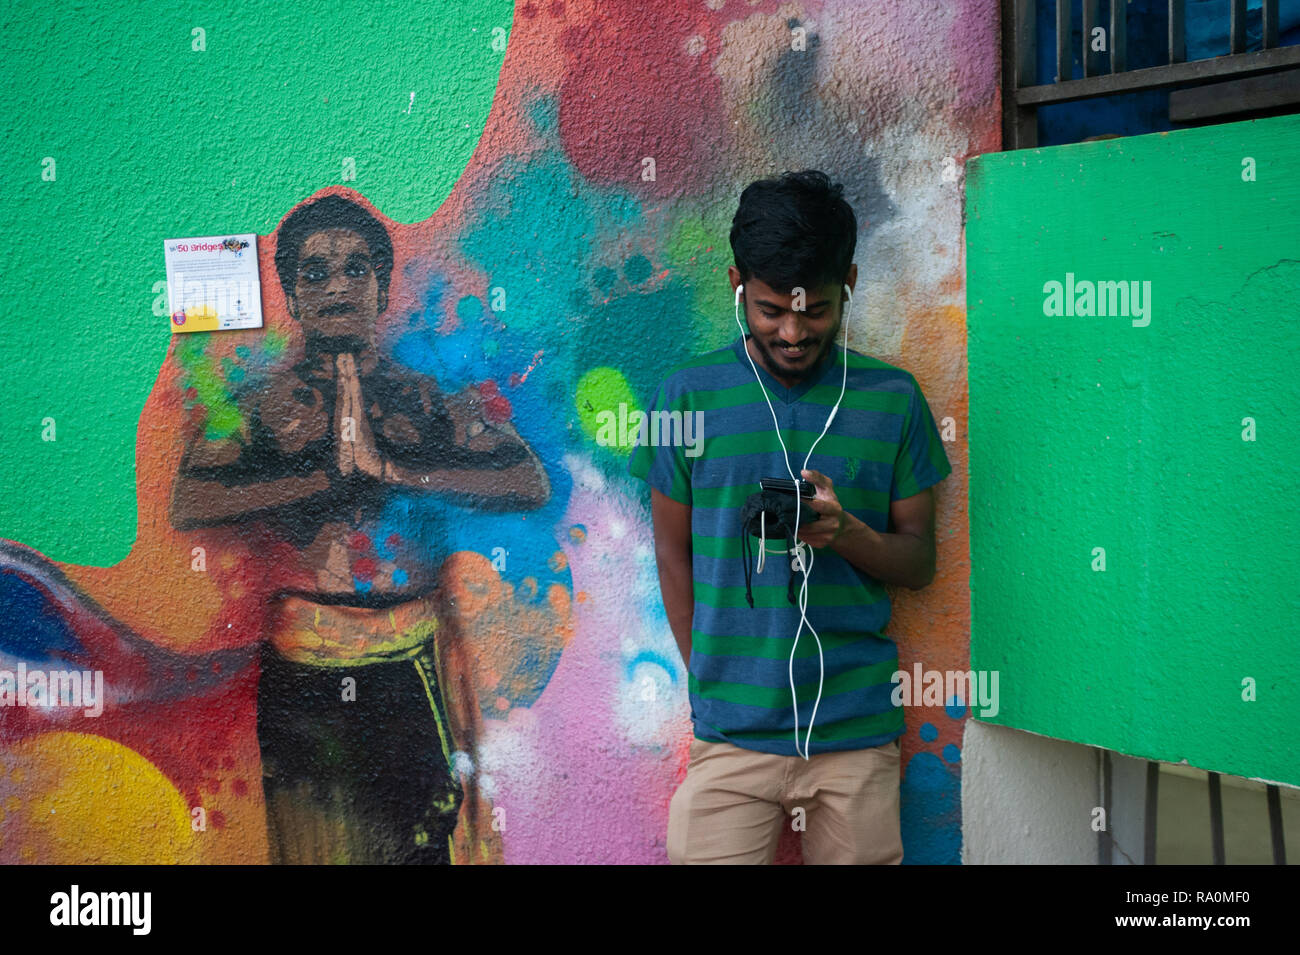 15.04.2018, Singapur, Republik Singapur, Asien - Ein junger Mann steht vor einem bunten Wandbild im Stadtteil Little India und schaut auf sein Smartph Stock Photo